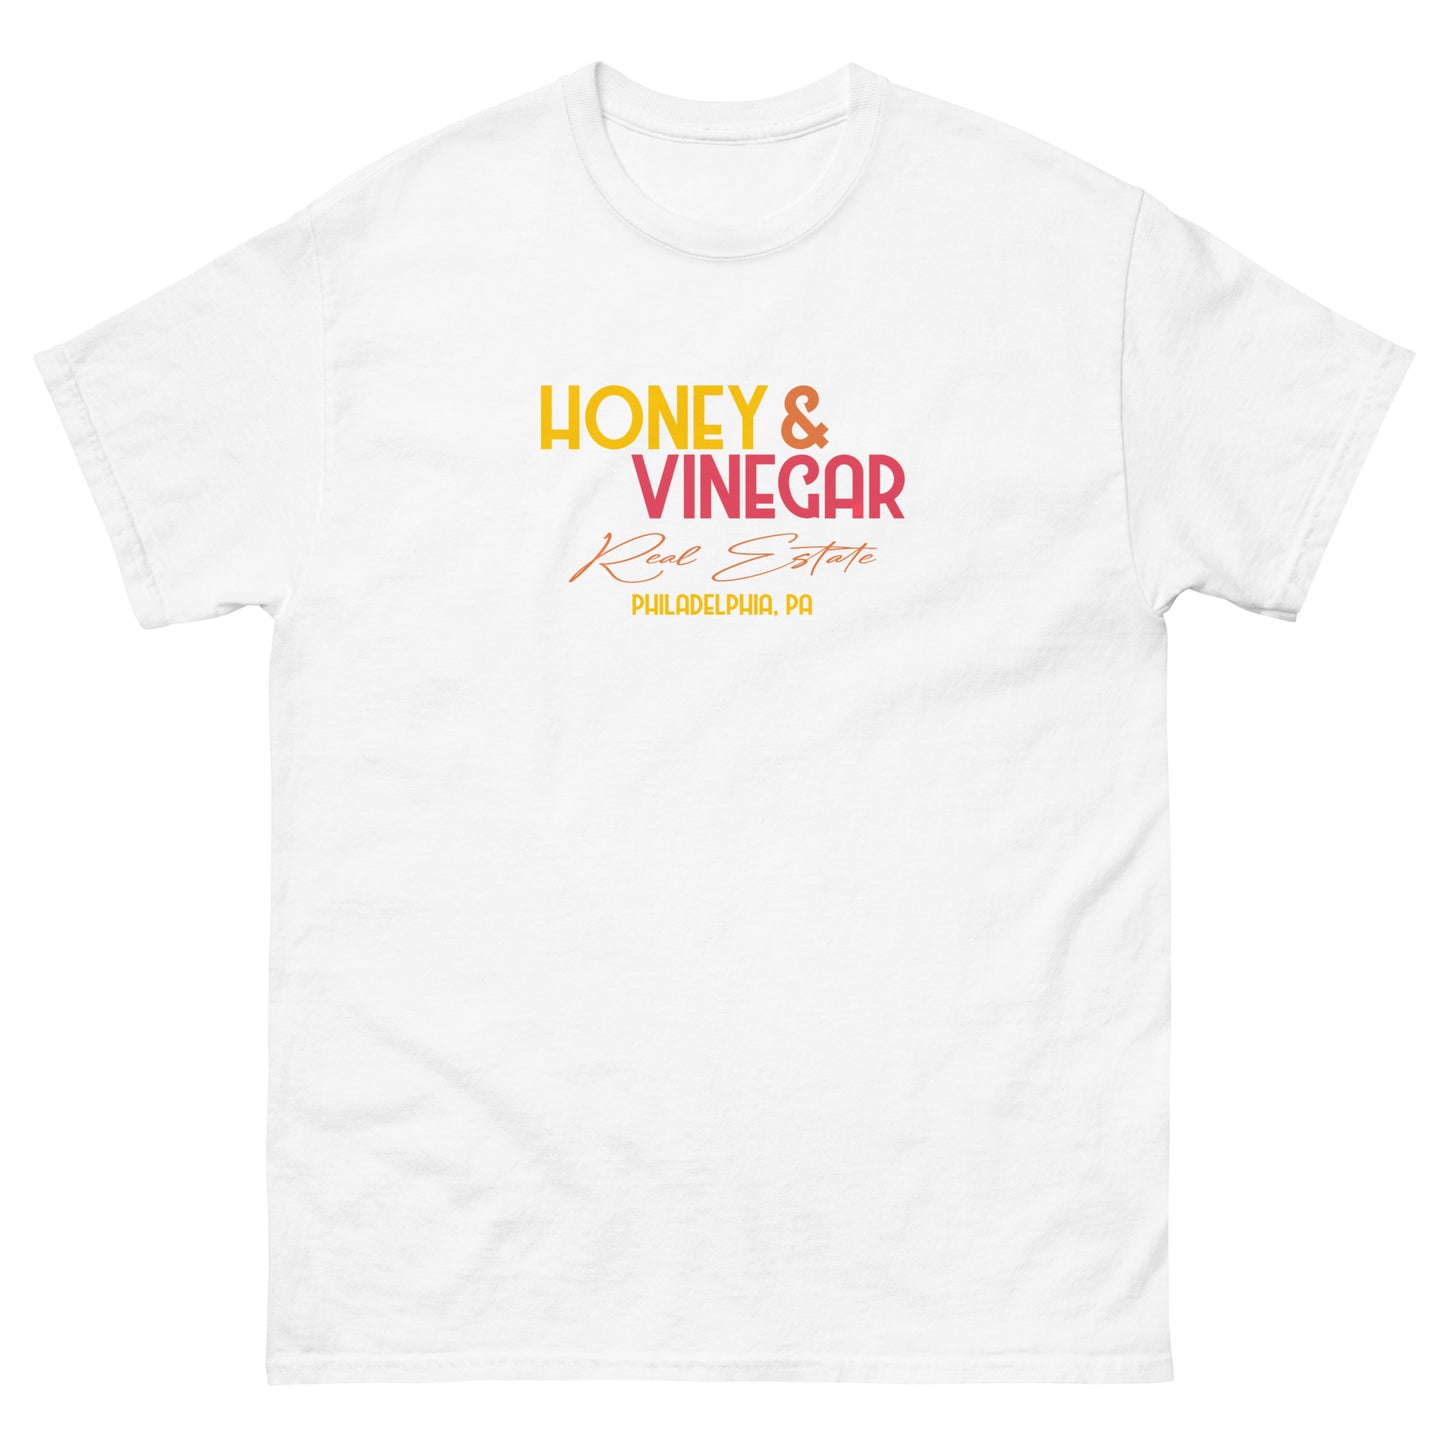 Honey and Vinegar classic tee